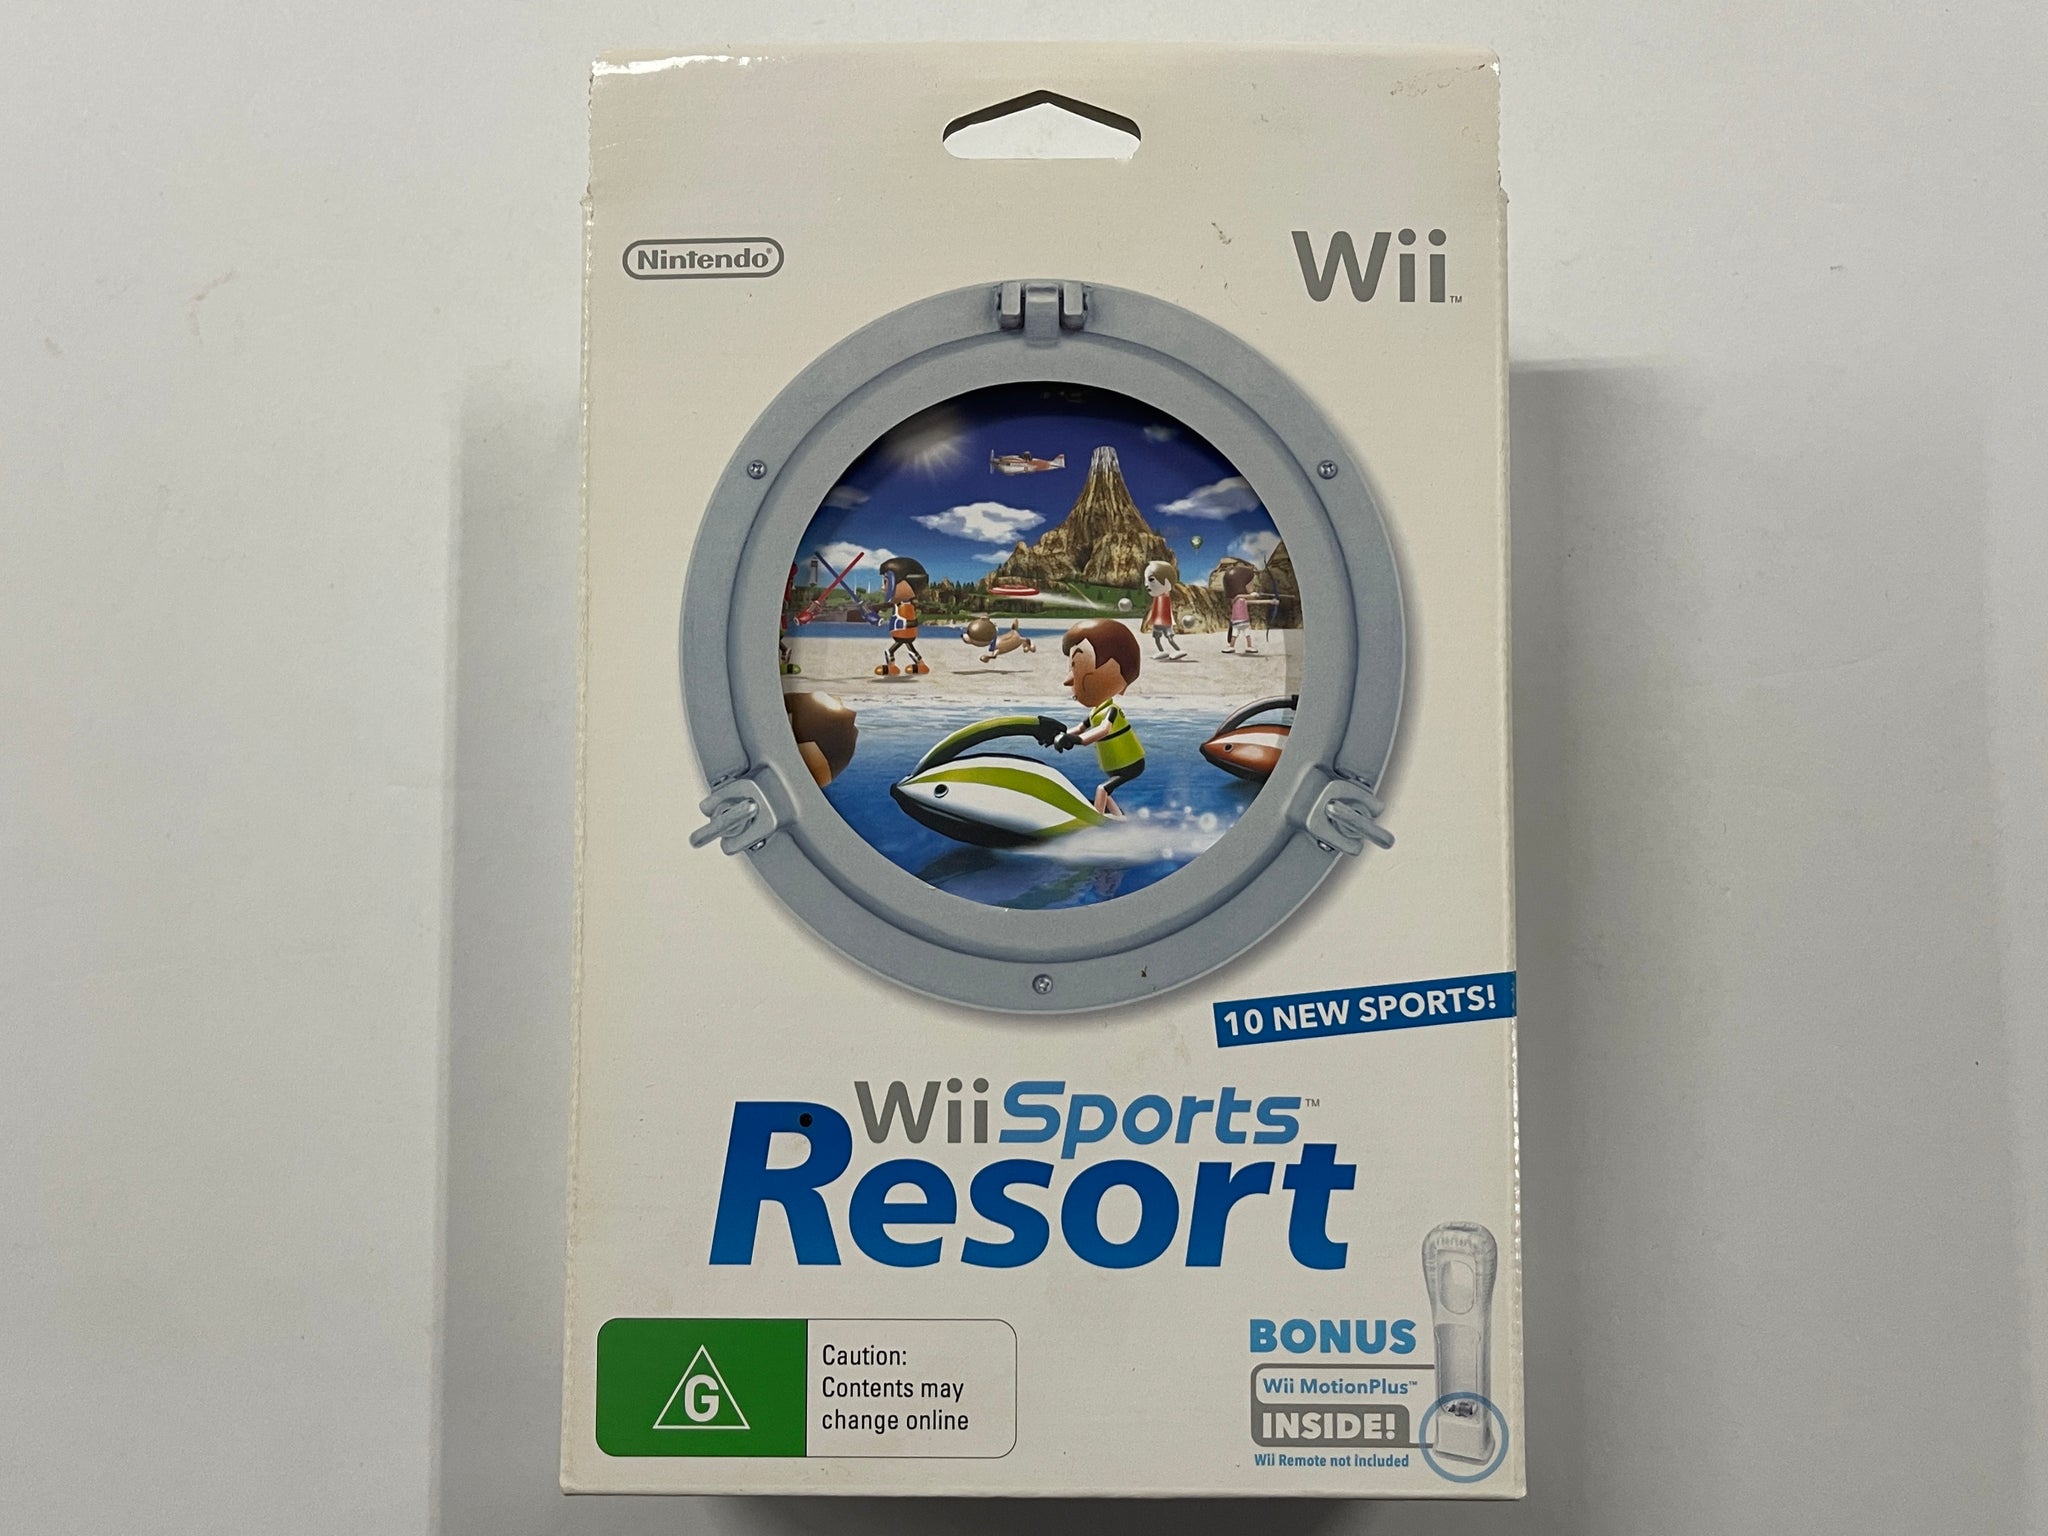 Nintendo Bundles Wii Sports Resort, MotionPlus With Wii